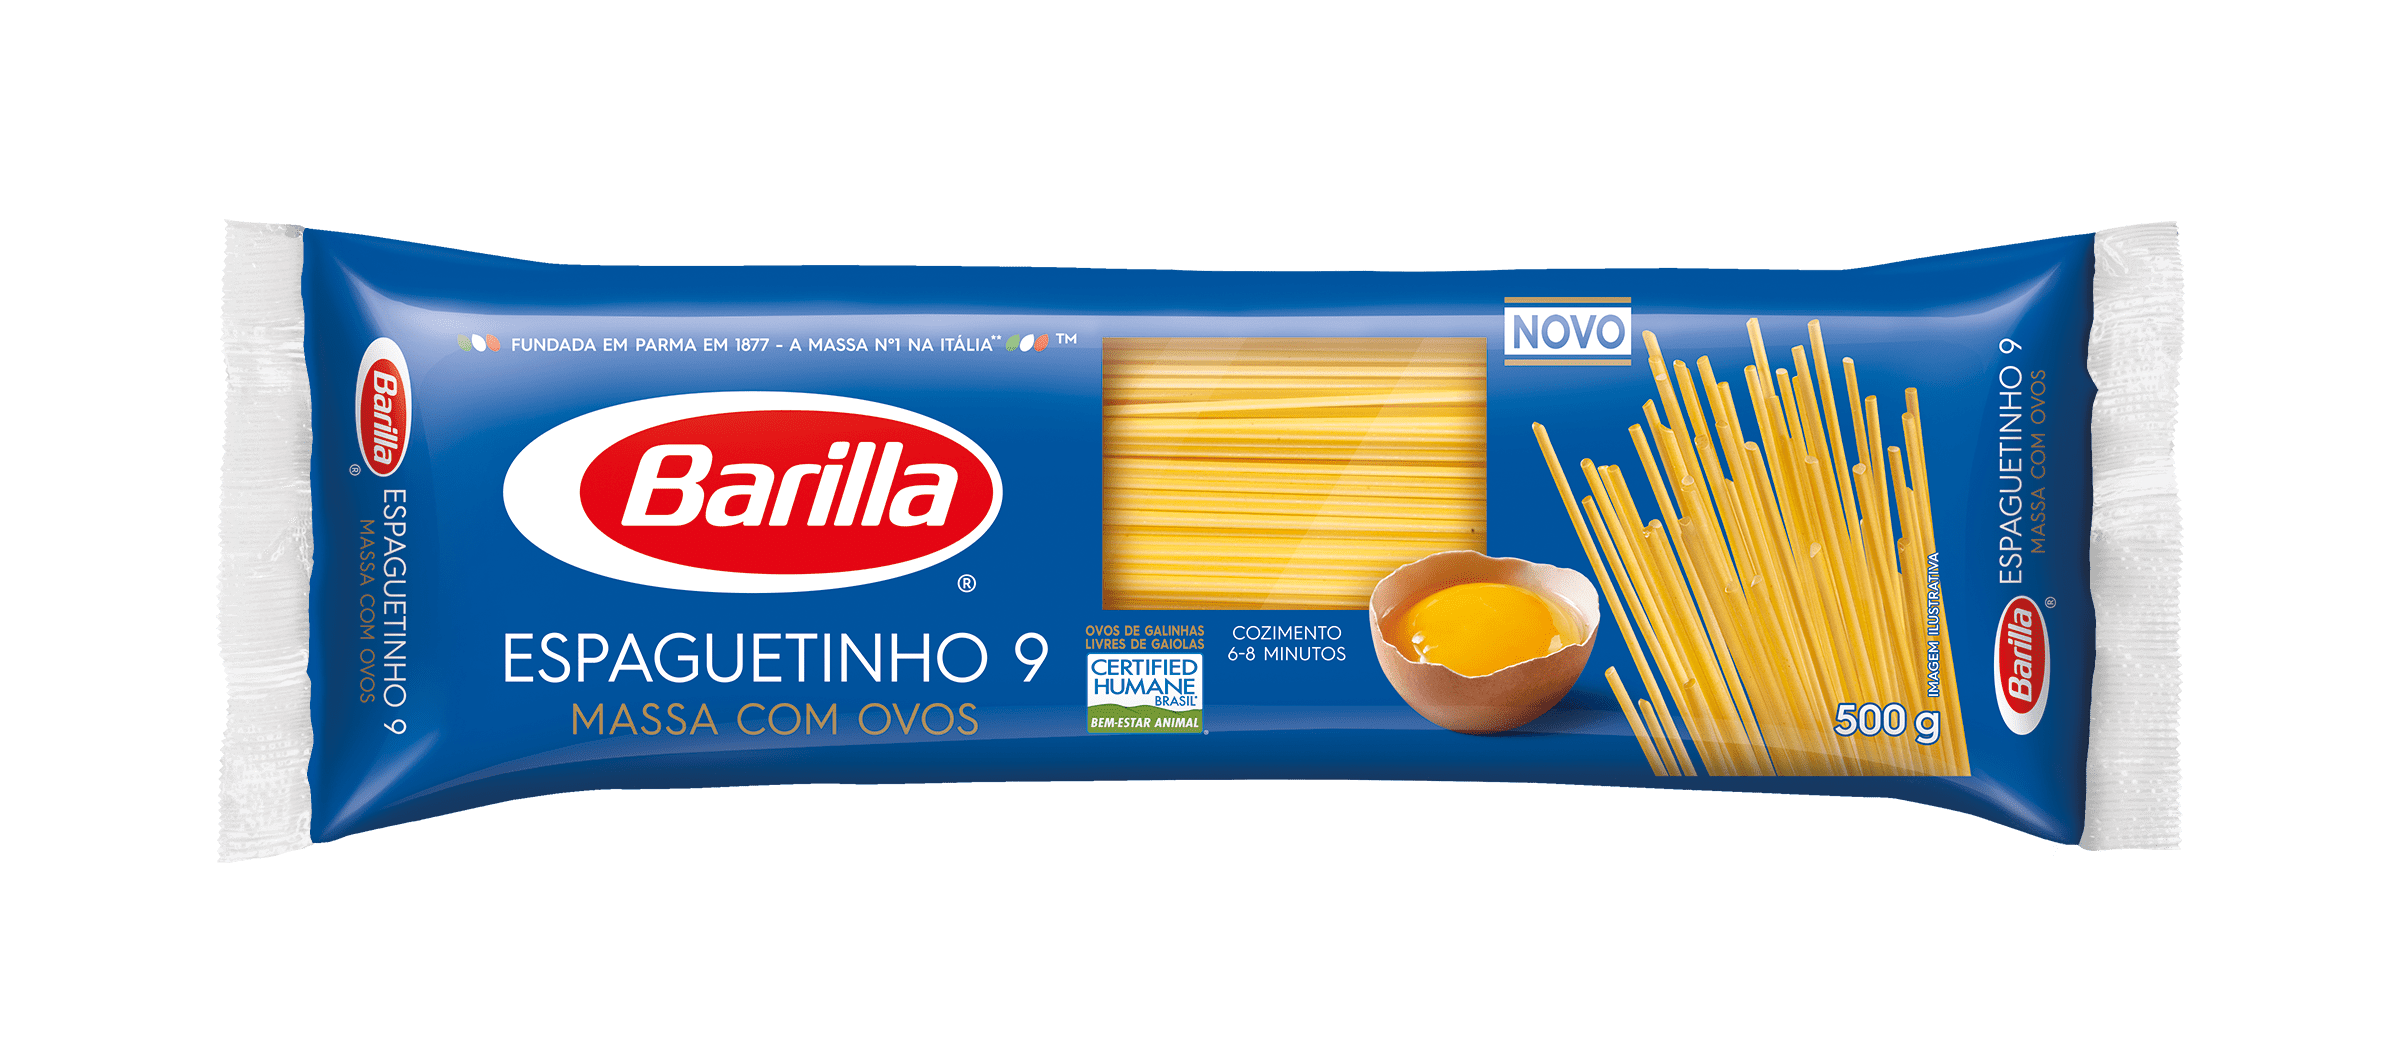 Espaguetinho 9